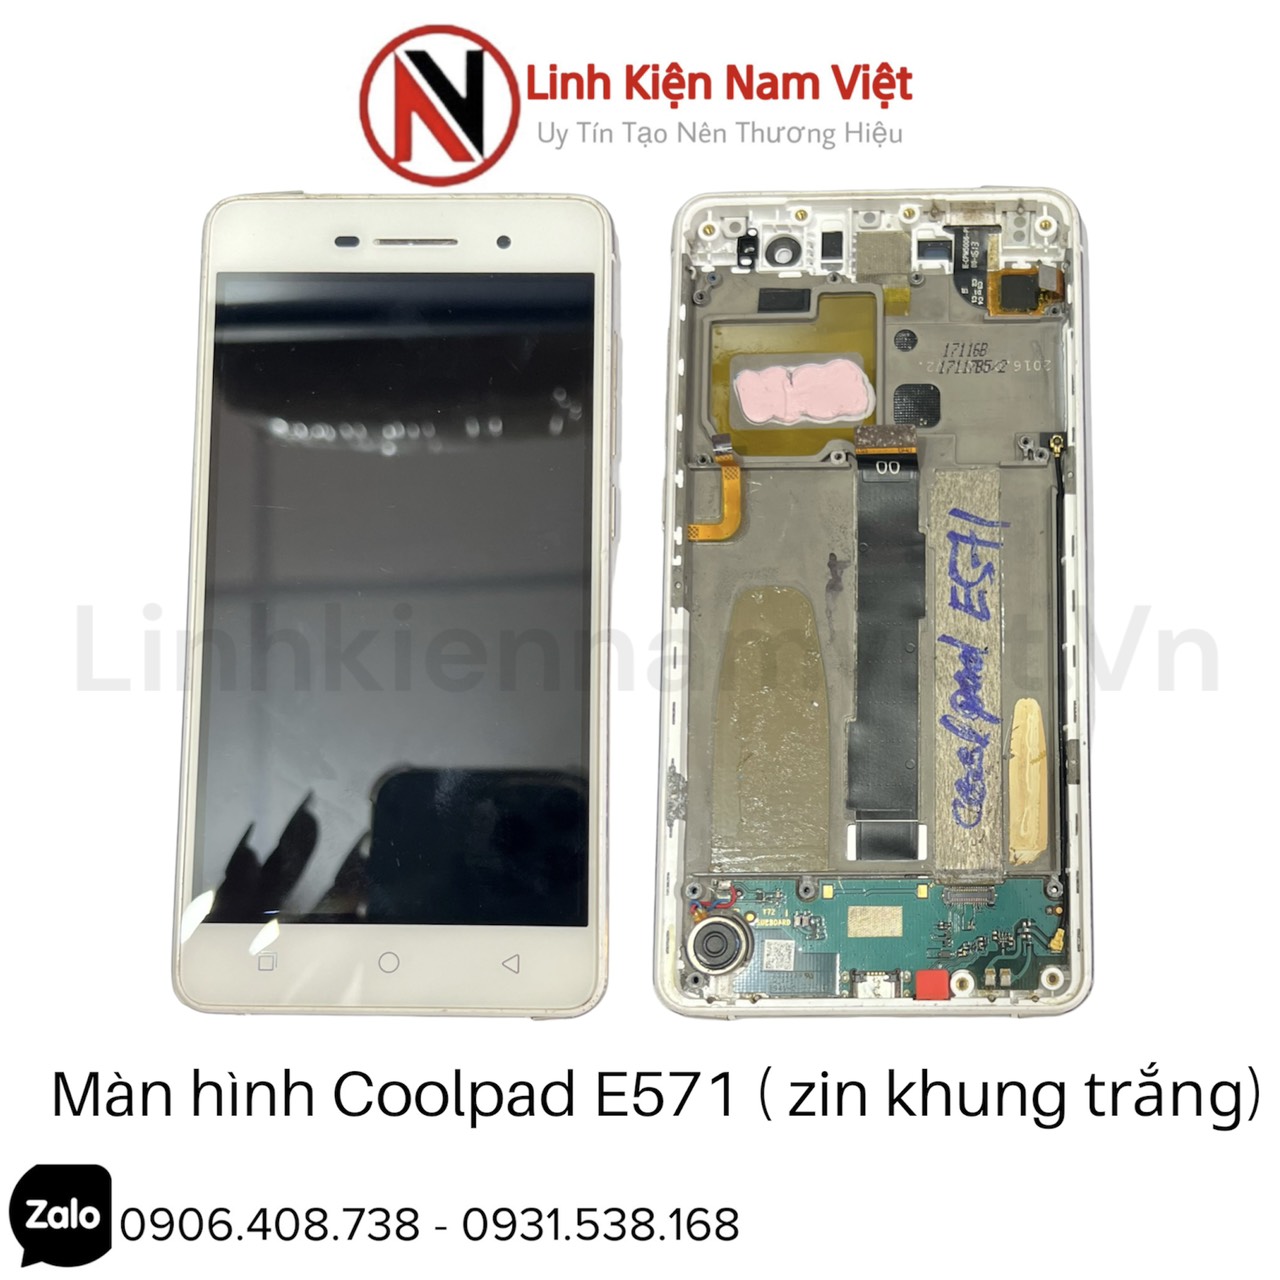 man-hinh-coolpad-e571-zin-khung-trang